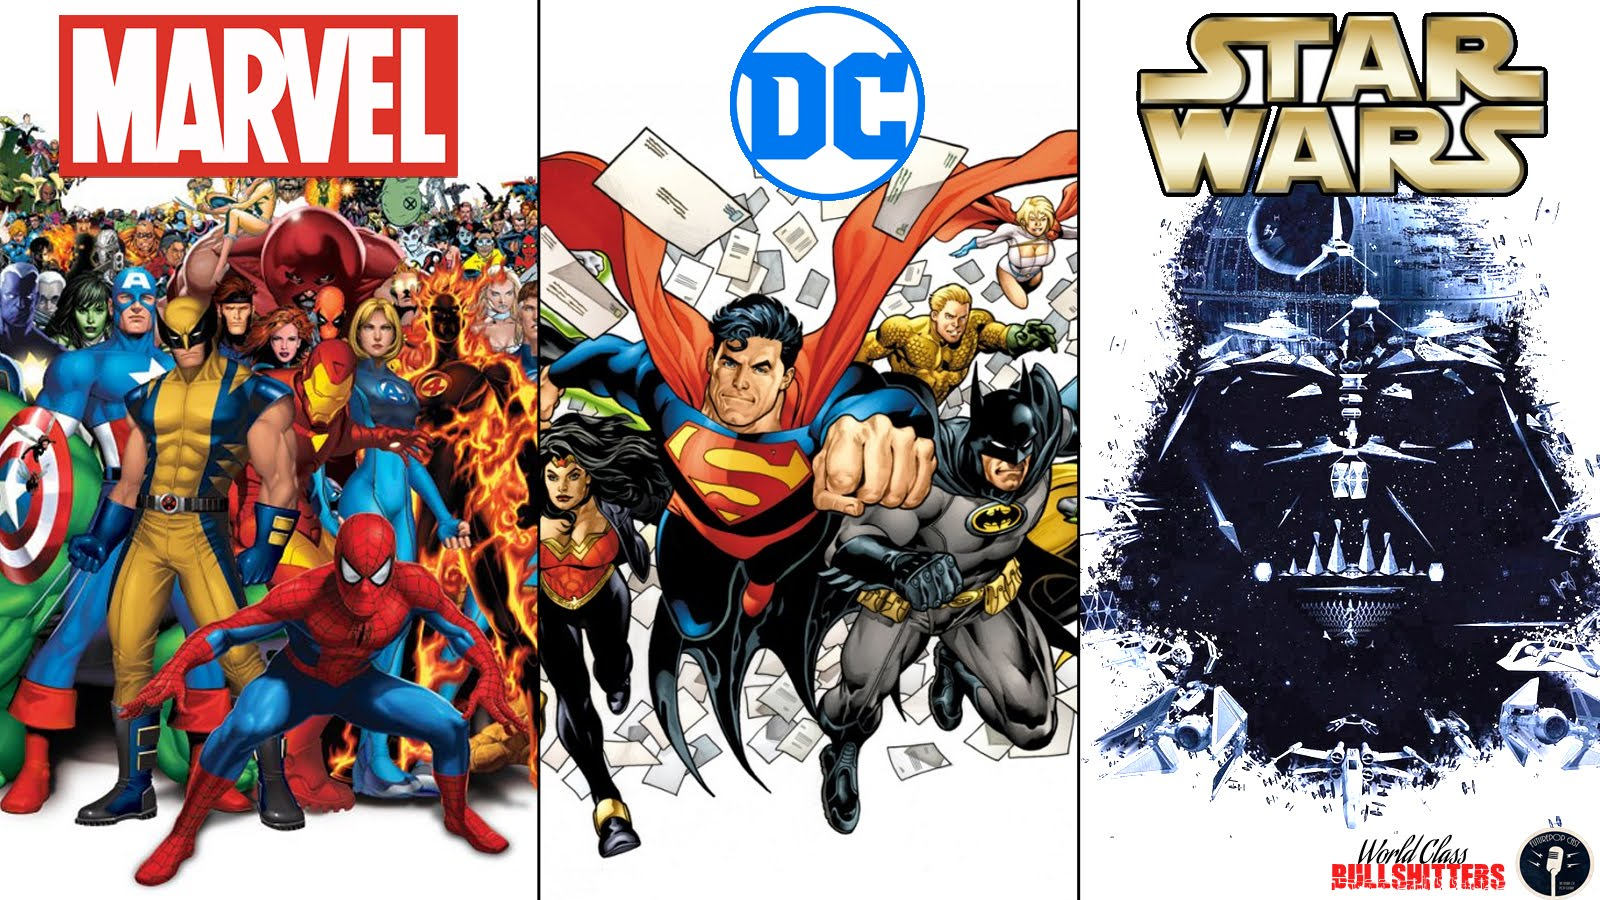 Звездные войны марвел. Звёздные войны против Марвел. Marvel vs DC. Марвел Звездные войны. DC И Марвел различия.